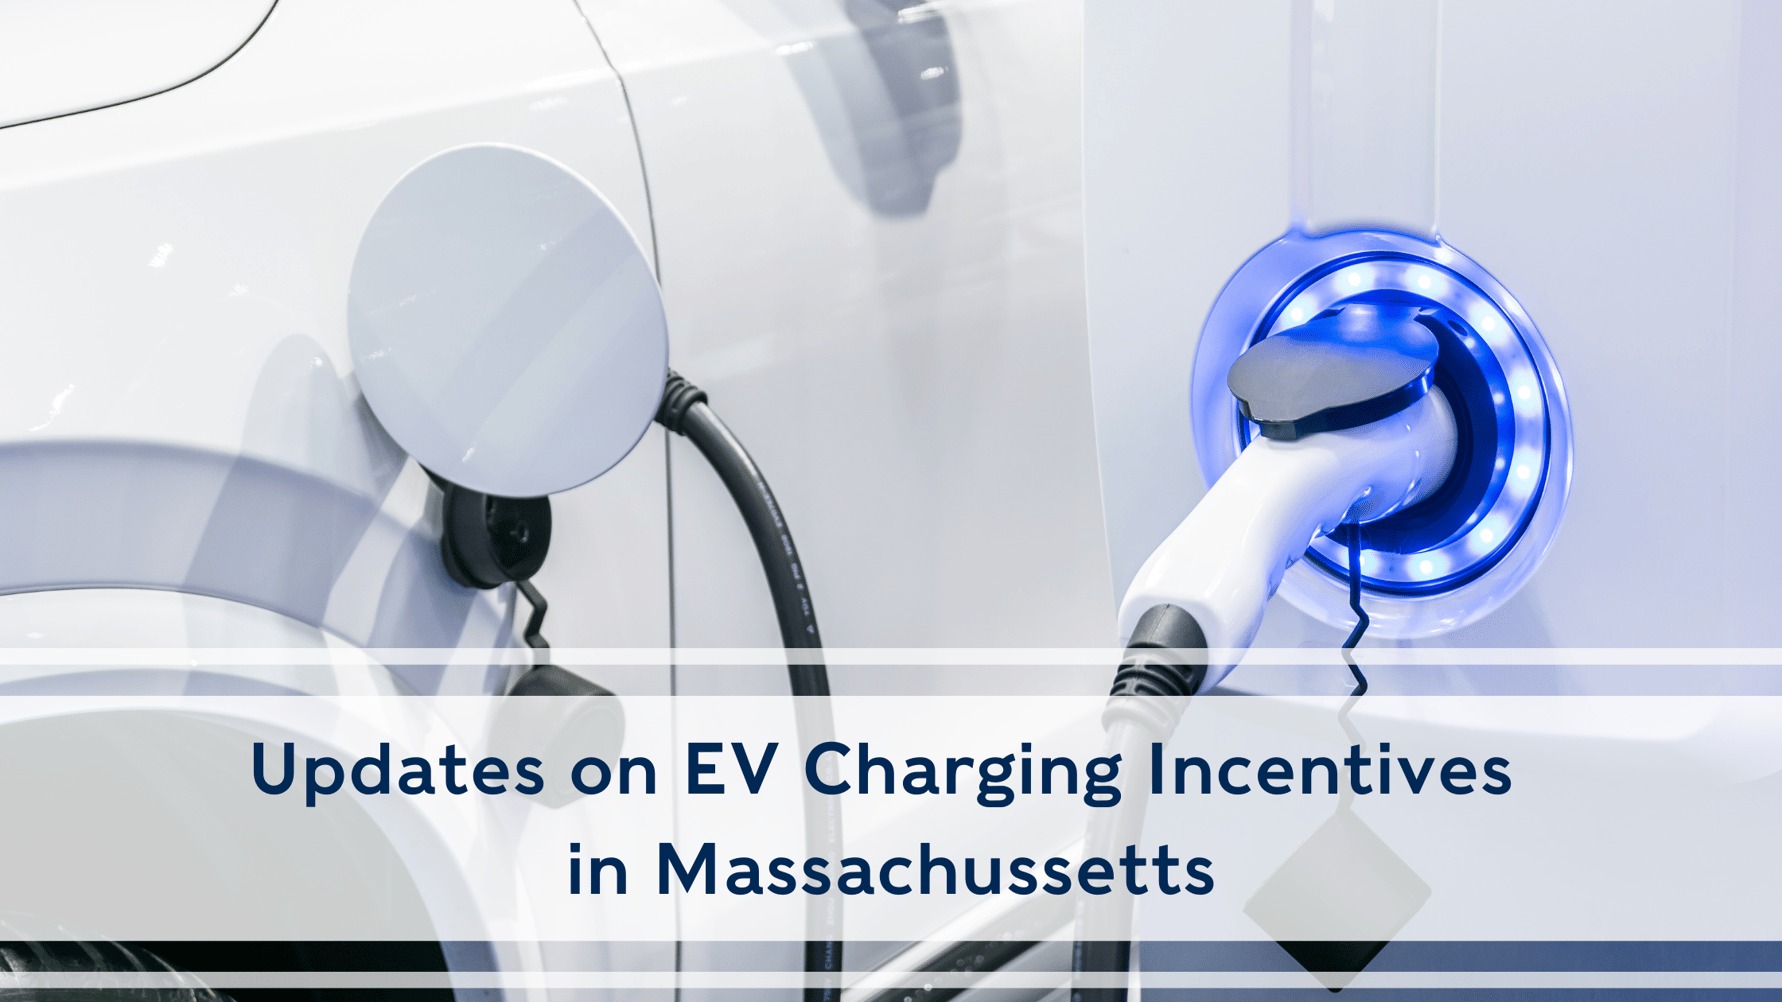 Massachusetts Charging Incentives Just Got Better